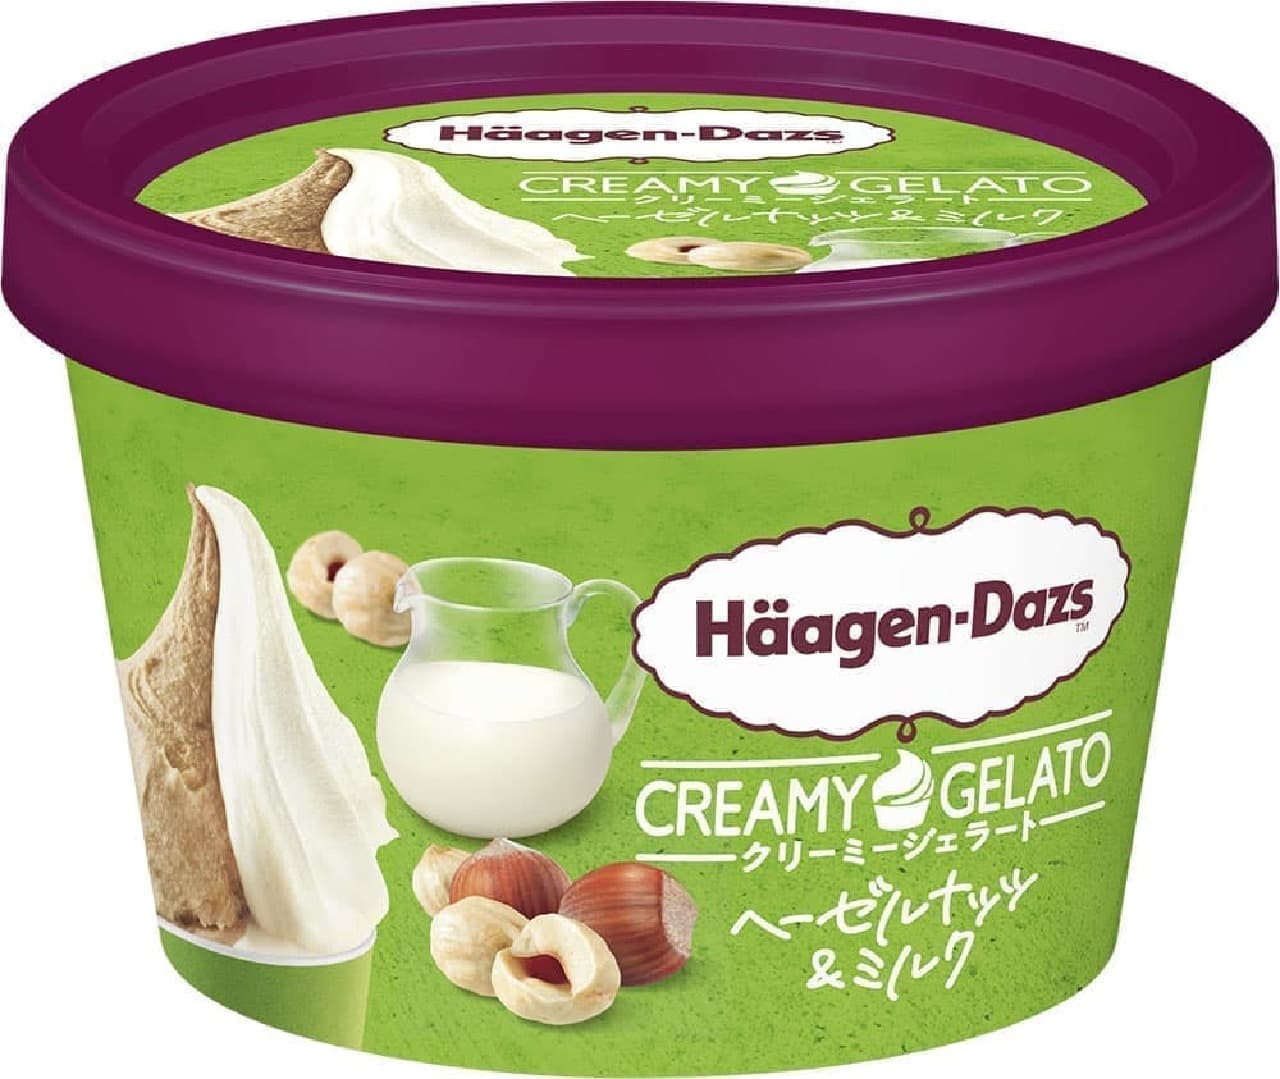 Haagen-Dazs Creamy Gelato "Hazelnuts & Milk"